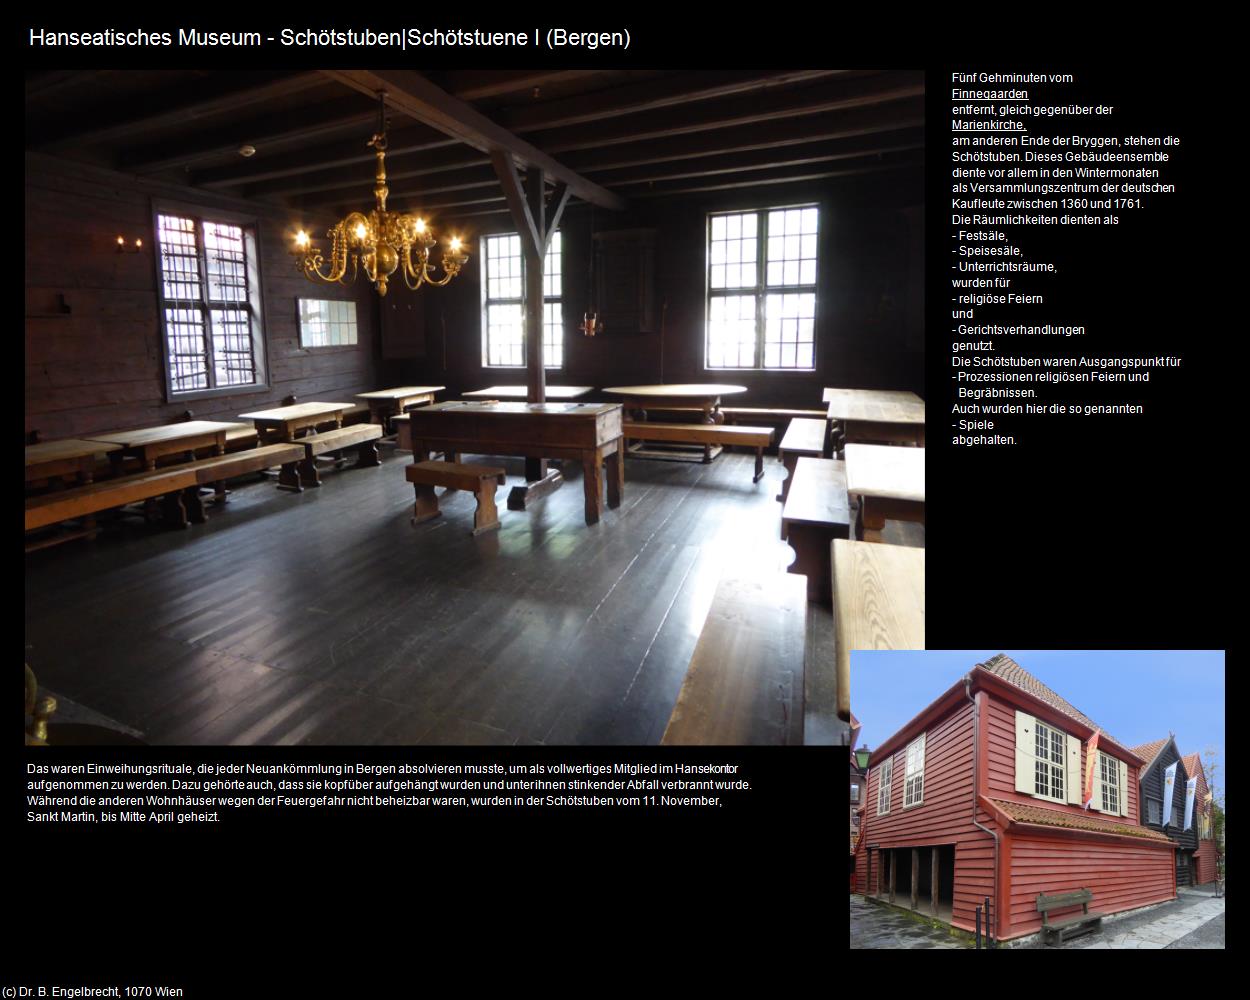 Hanseatisches Museum - Schötstuben I (Bergen) in Kulturatlas-NORWEGEN(c)B.Engelbrecht